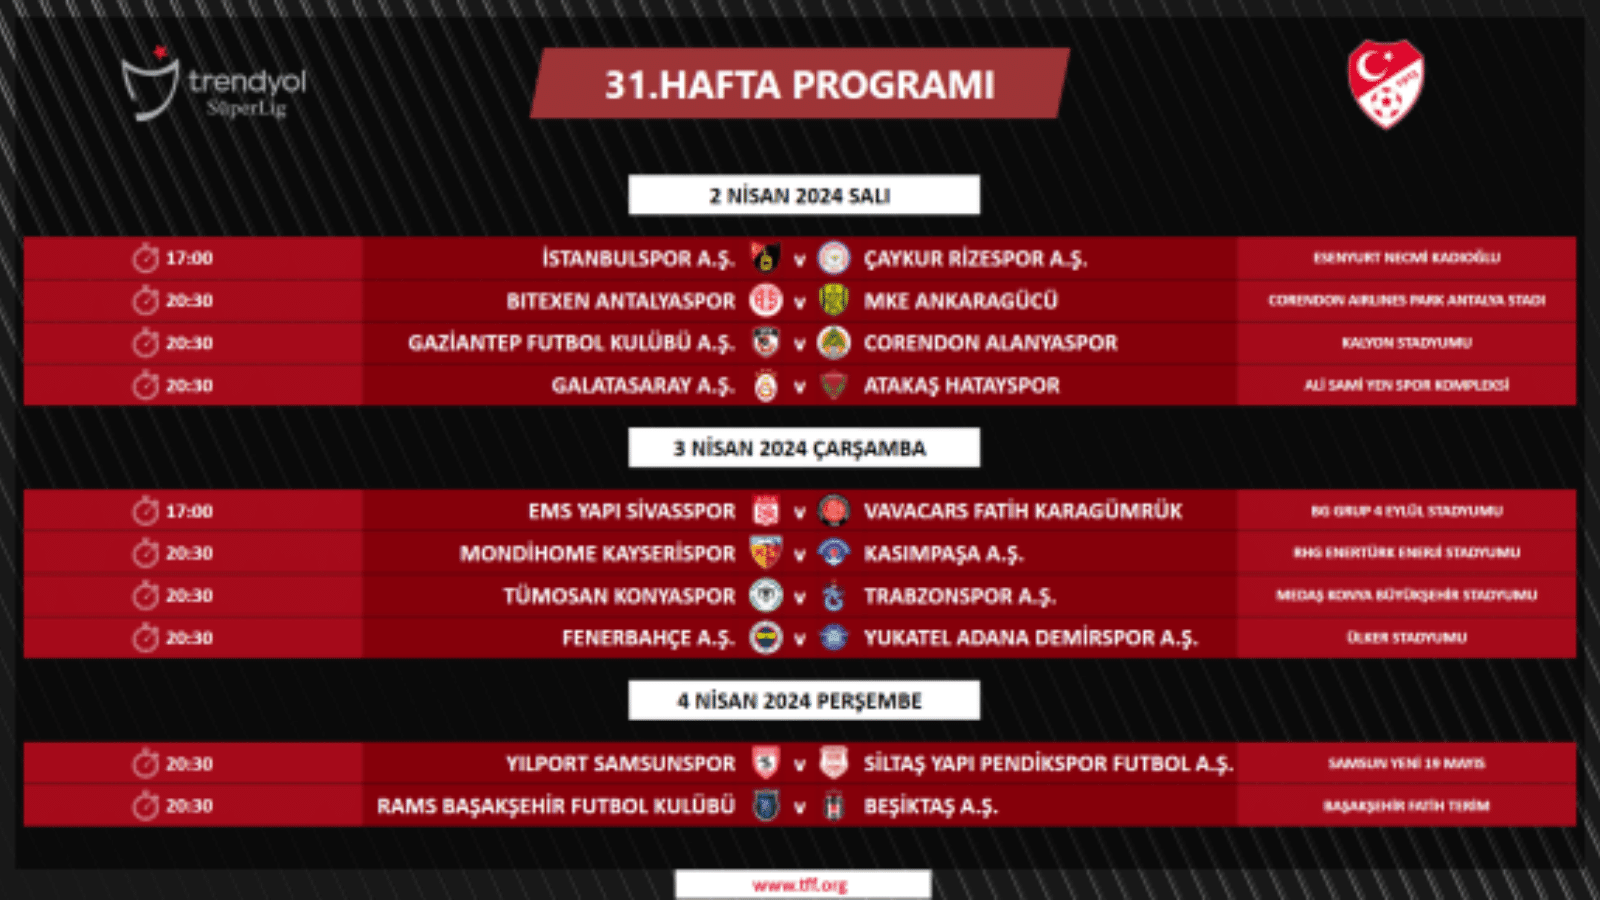 Trendyol Süper Lig’de 31. hafta programı açıklandı